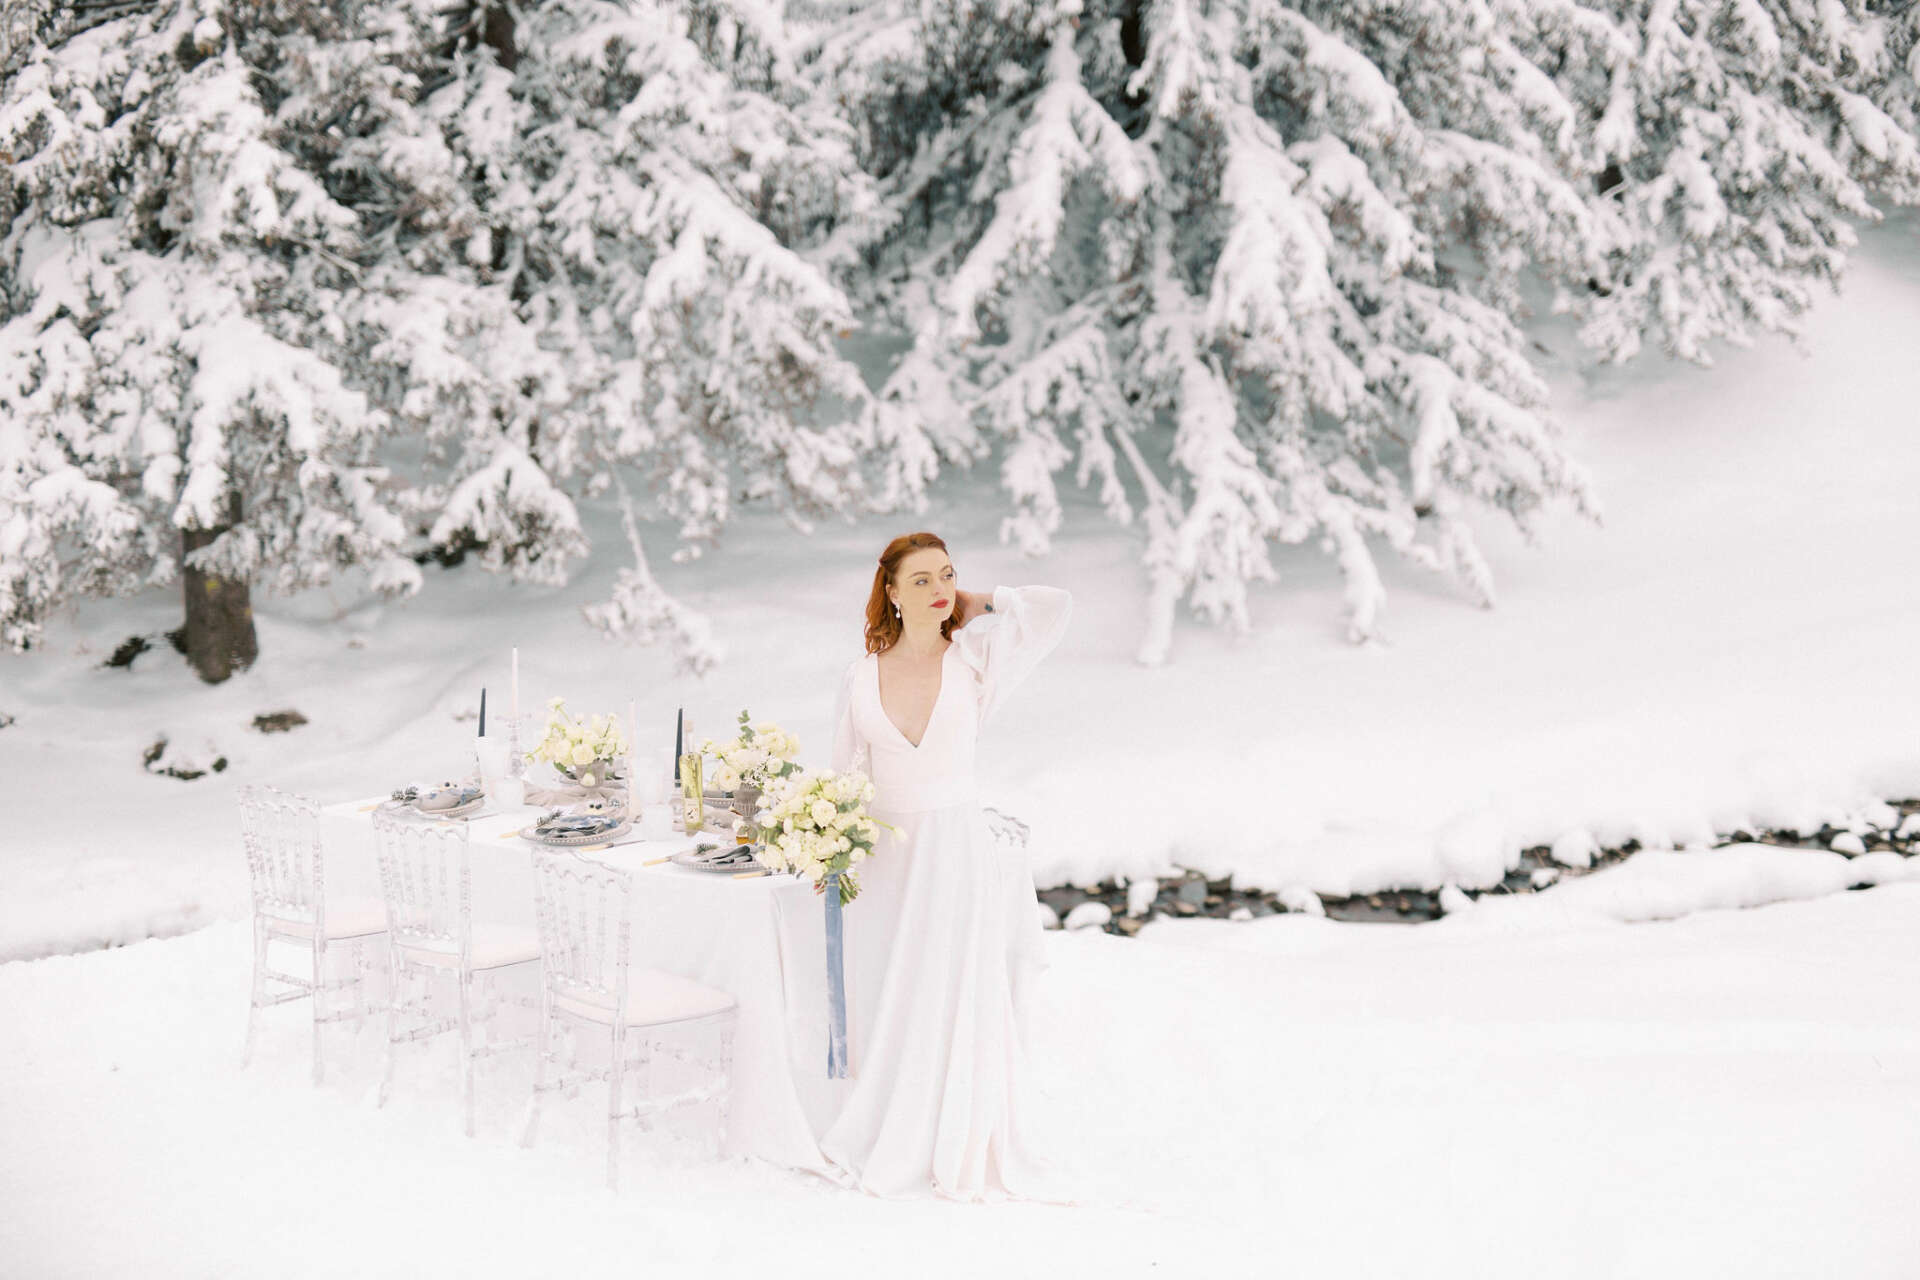 Mariée à la neige, mariée avec son bouquet, mariée avec sa table de mariage, mariage hiver, robe de mariée hivernale